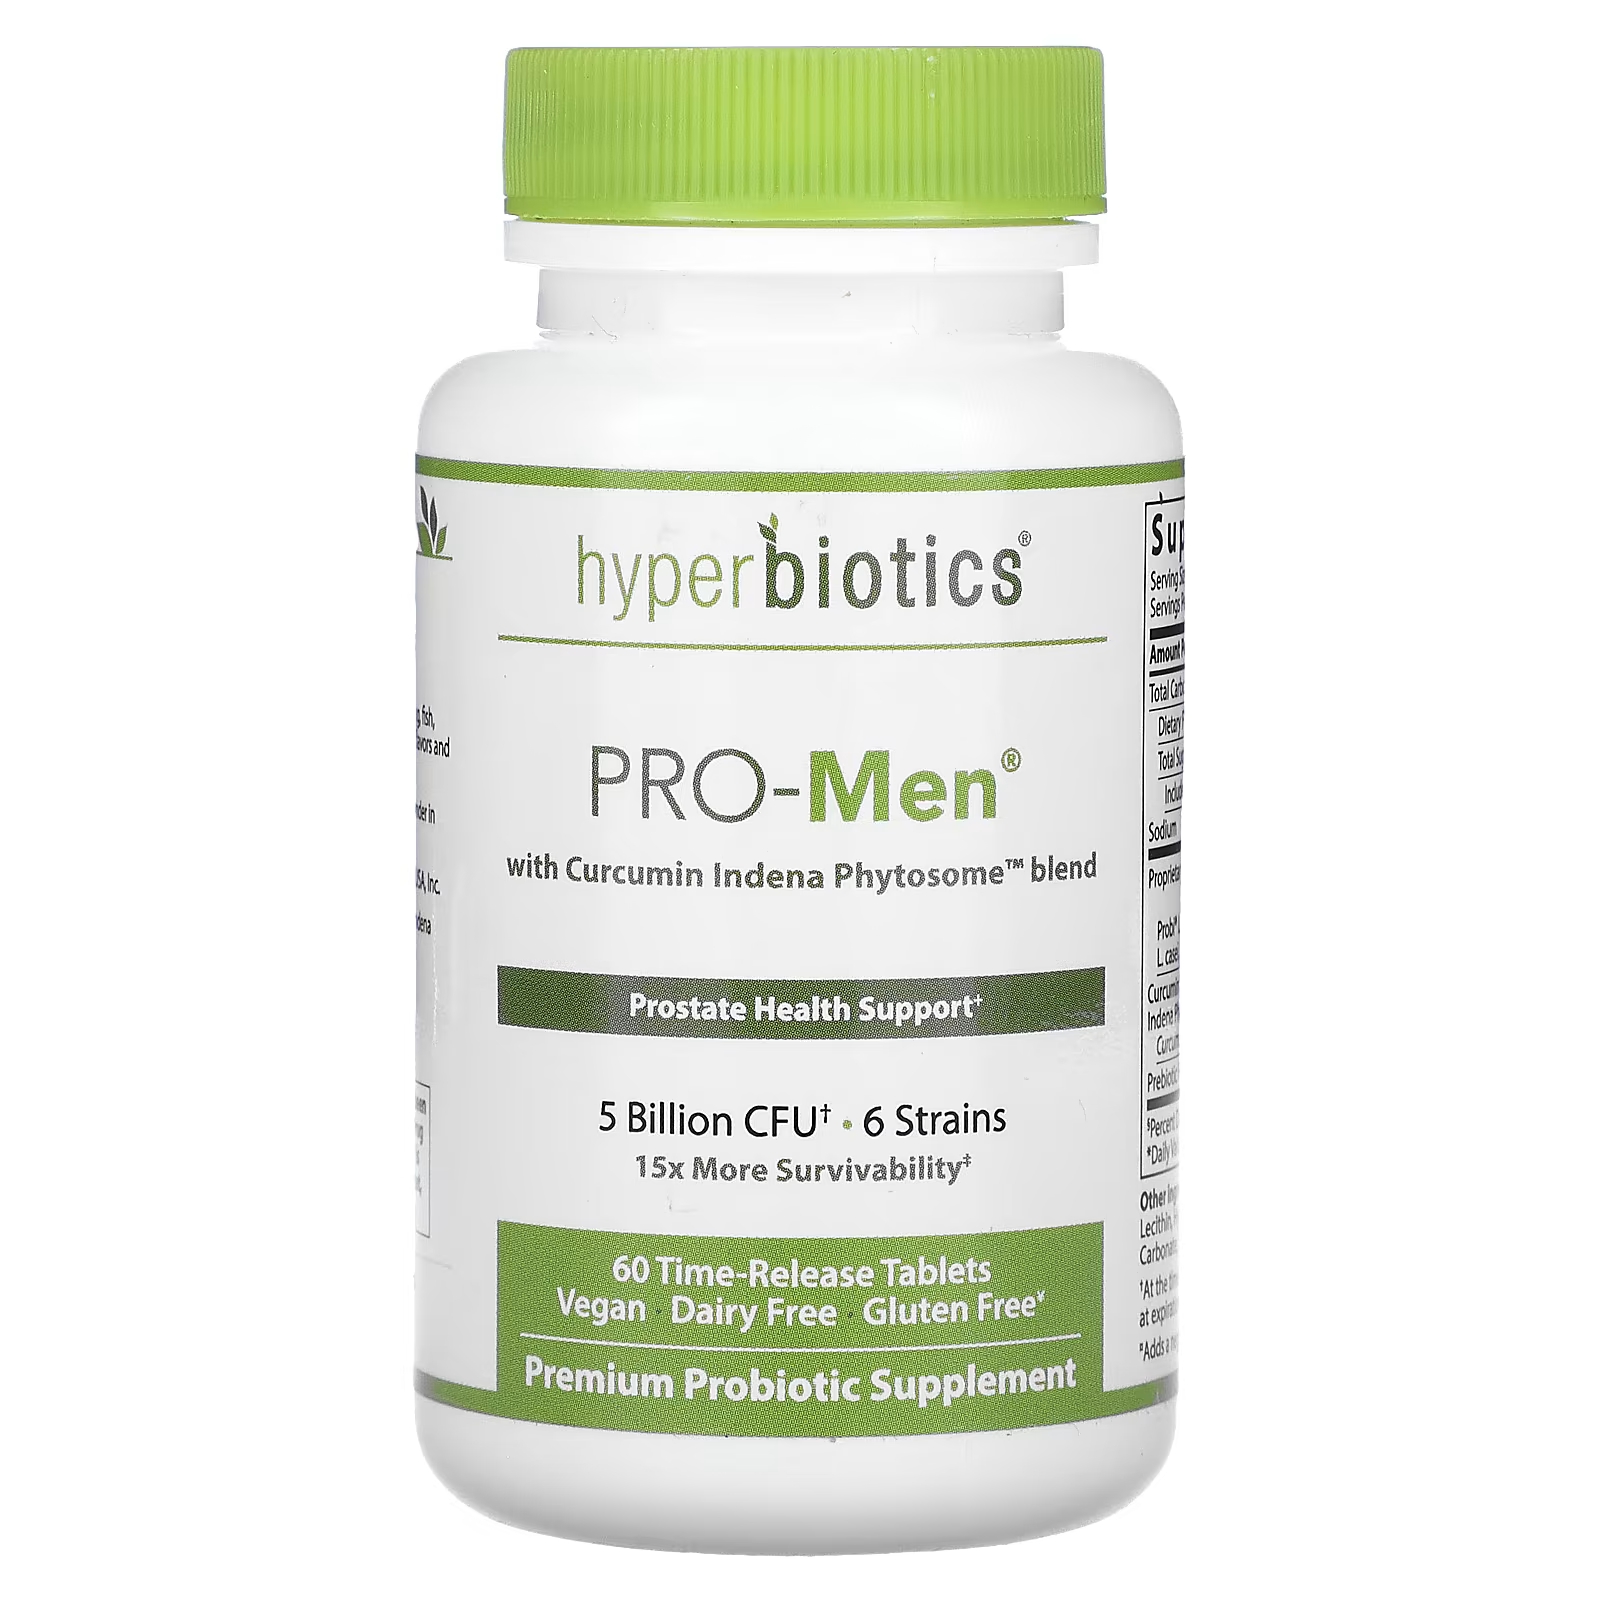 Пищевая добавка Hyperbiotics Pro-Men со смесью фитосом куркумина, 60 таблеток пролонгированного действия